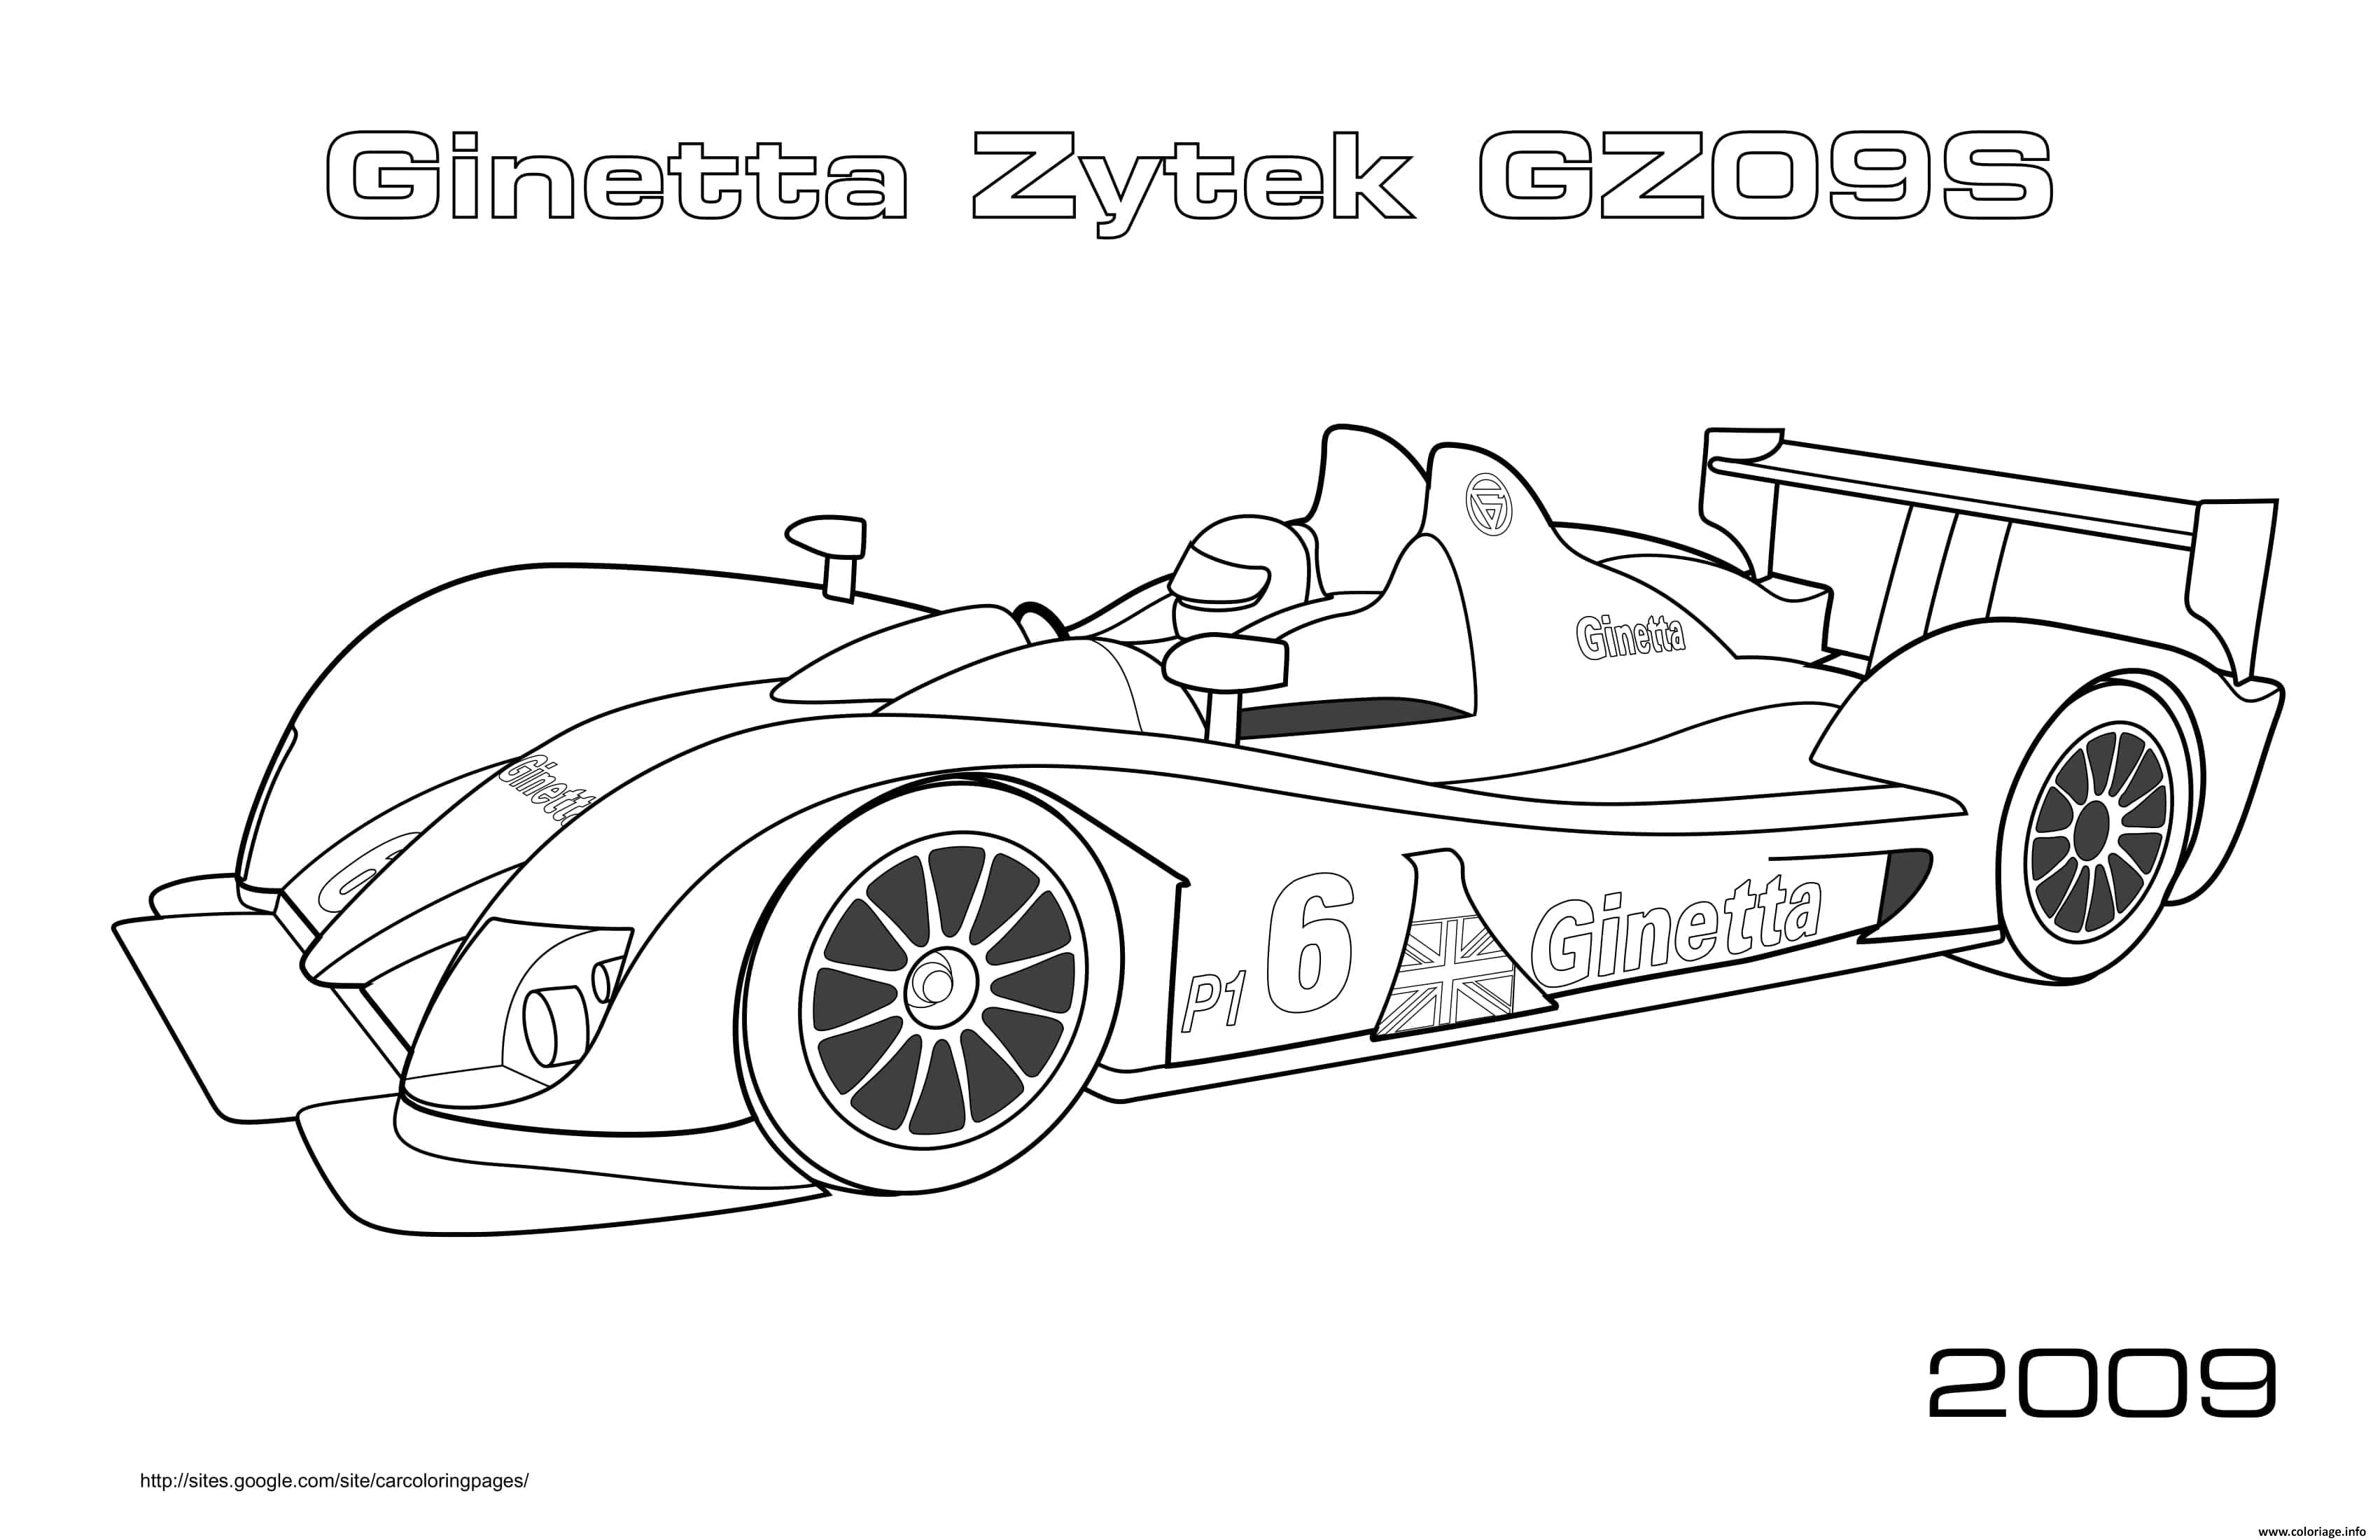 Dessin F1 Ginetta Zytek Gz09s 2009 Coloriage Gratuit à Imprimer